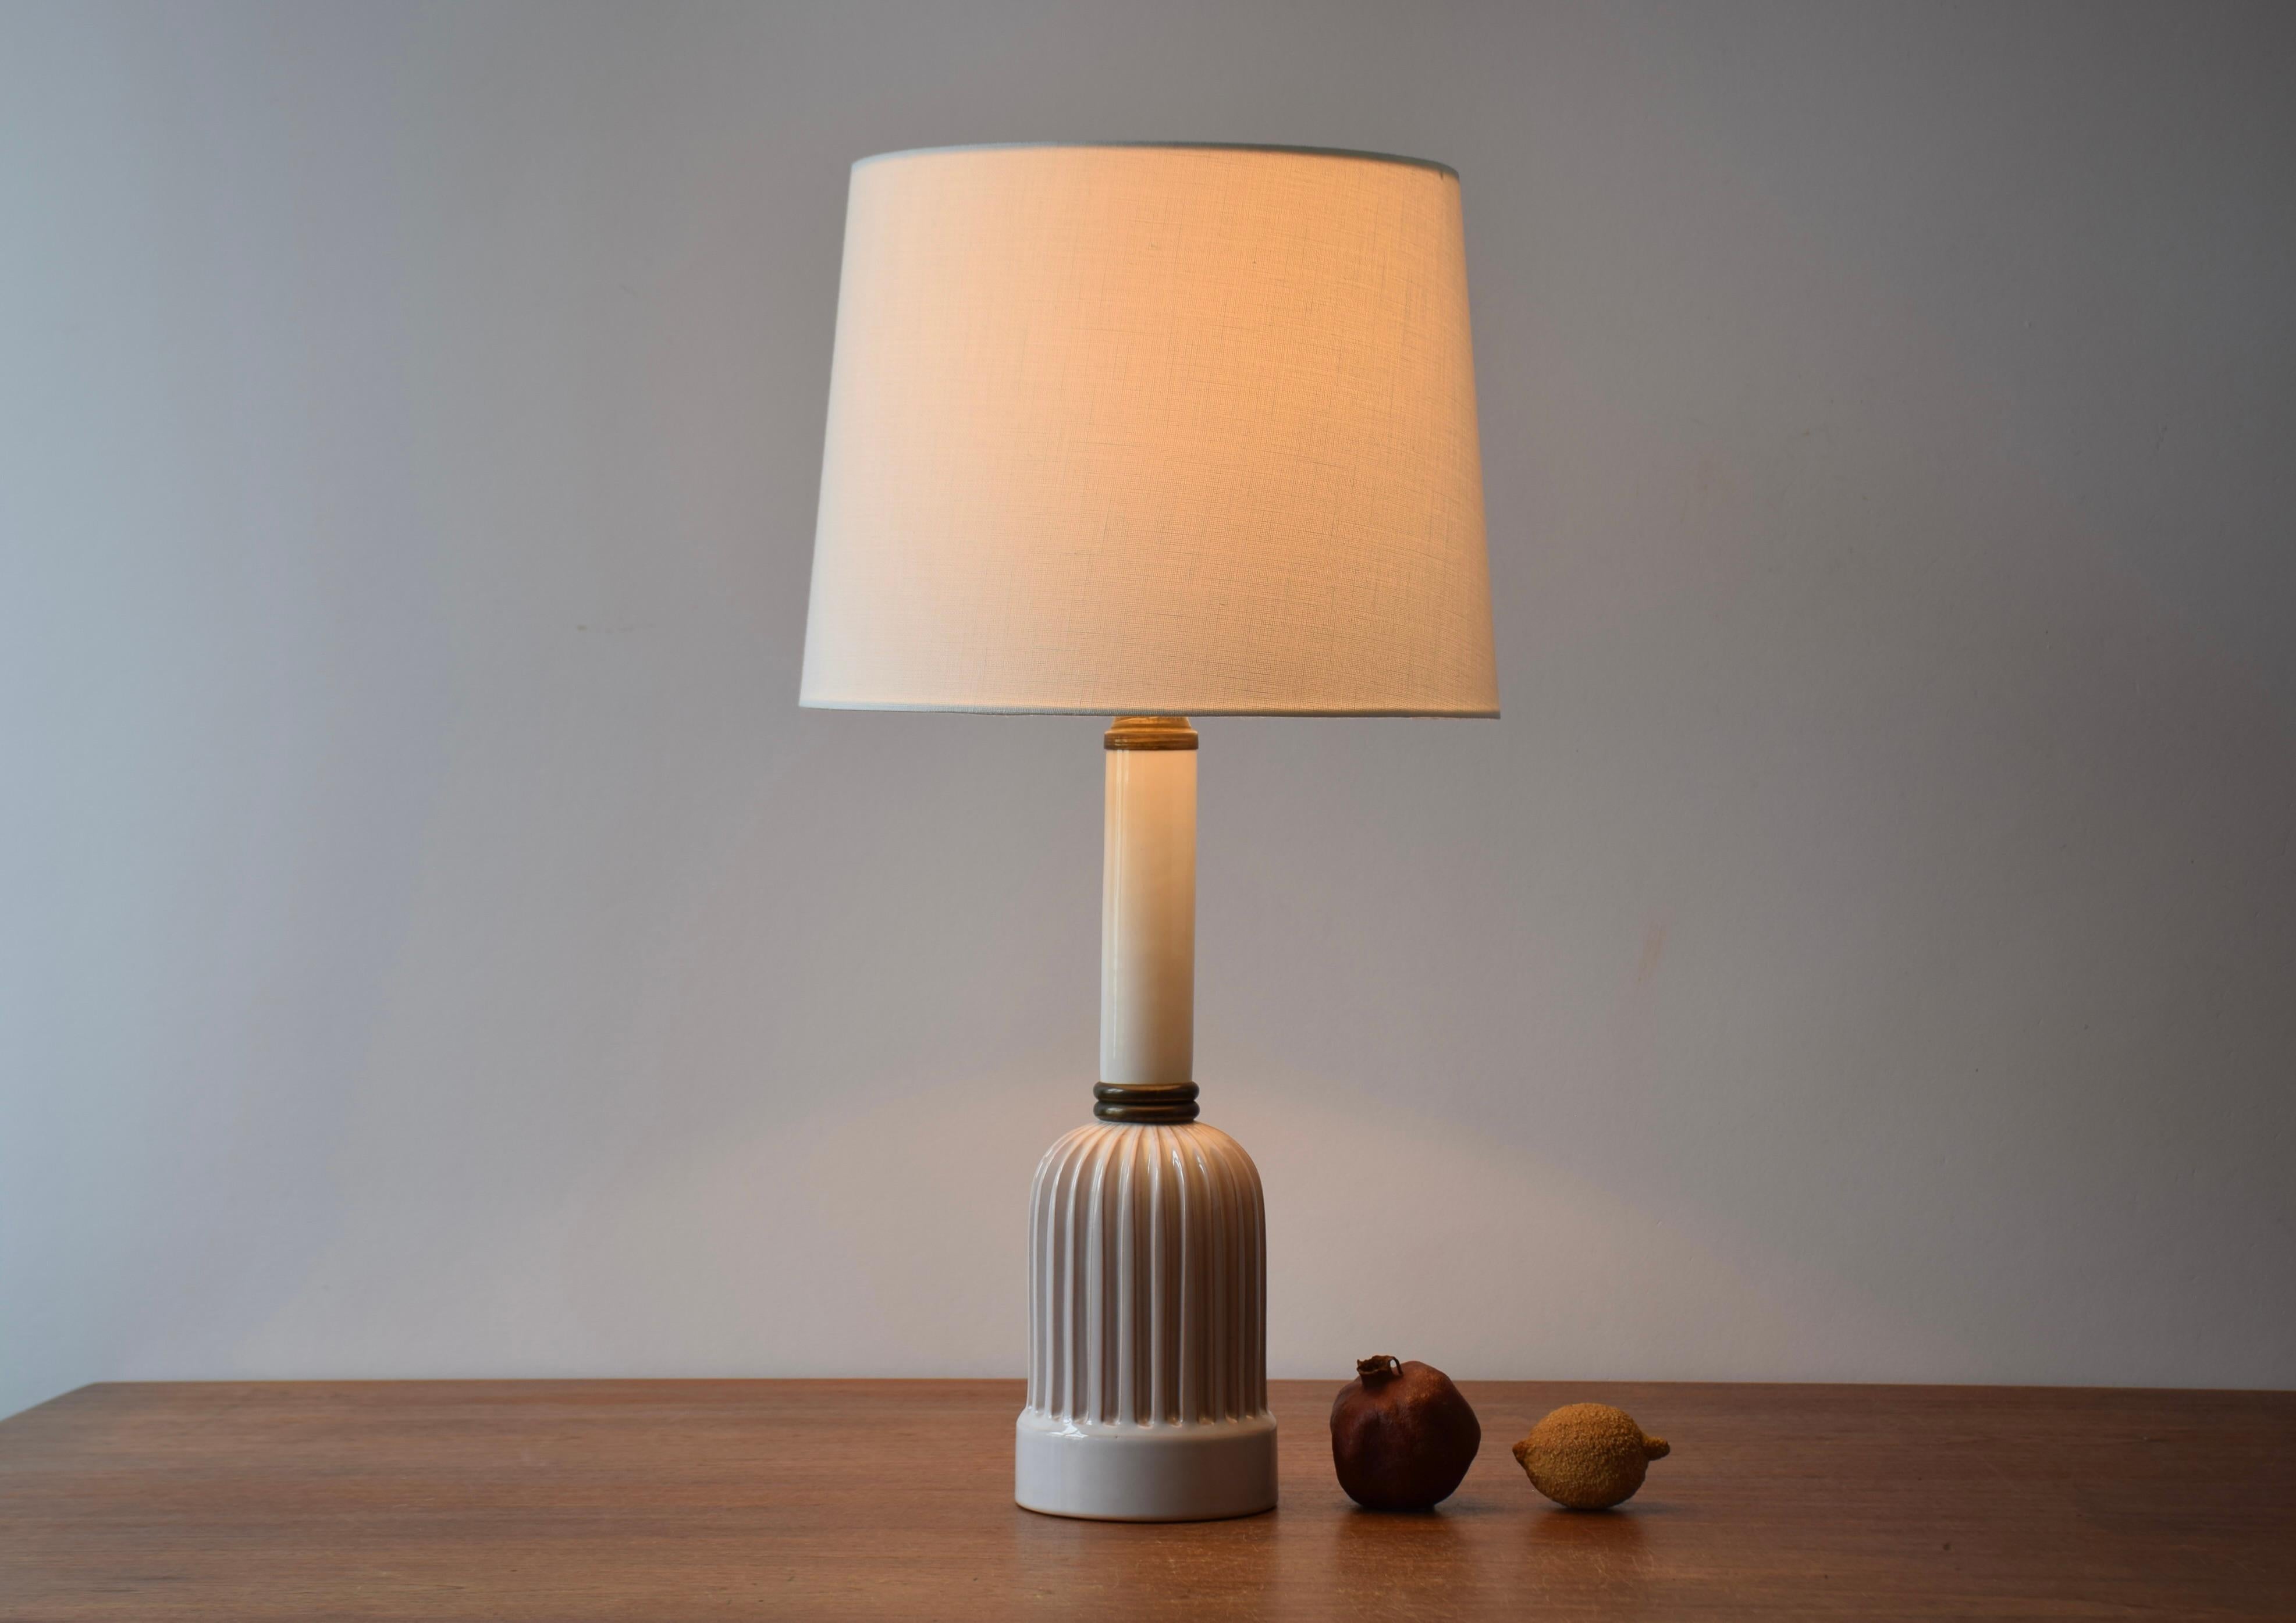 Dänische Vintage-Keramik-Tischlampe mit dekorativem gerilltem Korpus. Hergestellt ca. 1950s.

Die Lampe ist unsigniert, aber sie könnte entweder aus der Keramikwerkstatt Schollert oder Eslau stammen oder im Stil dieser Werkstätten gestaltet sein. Er